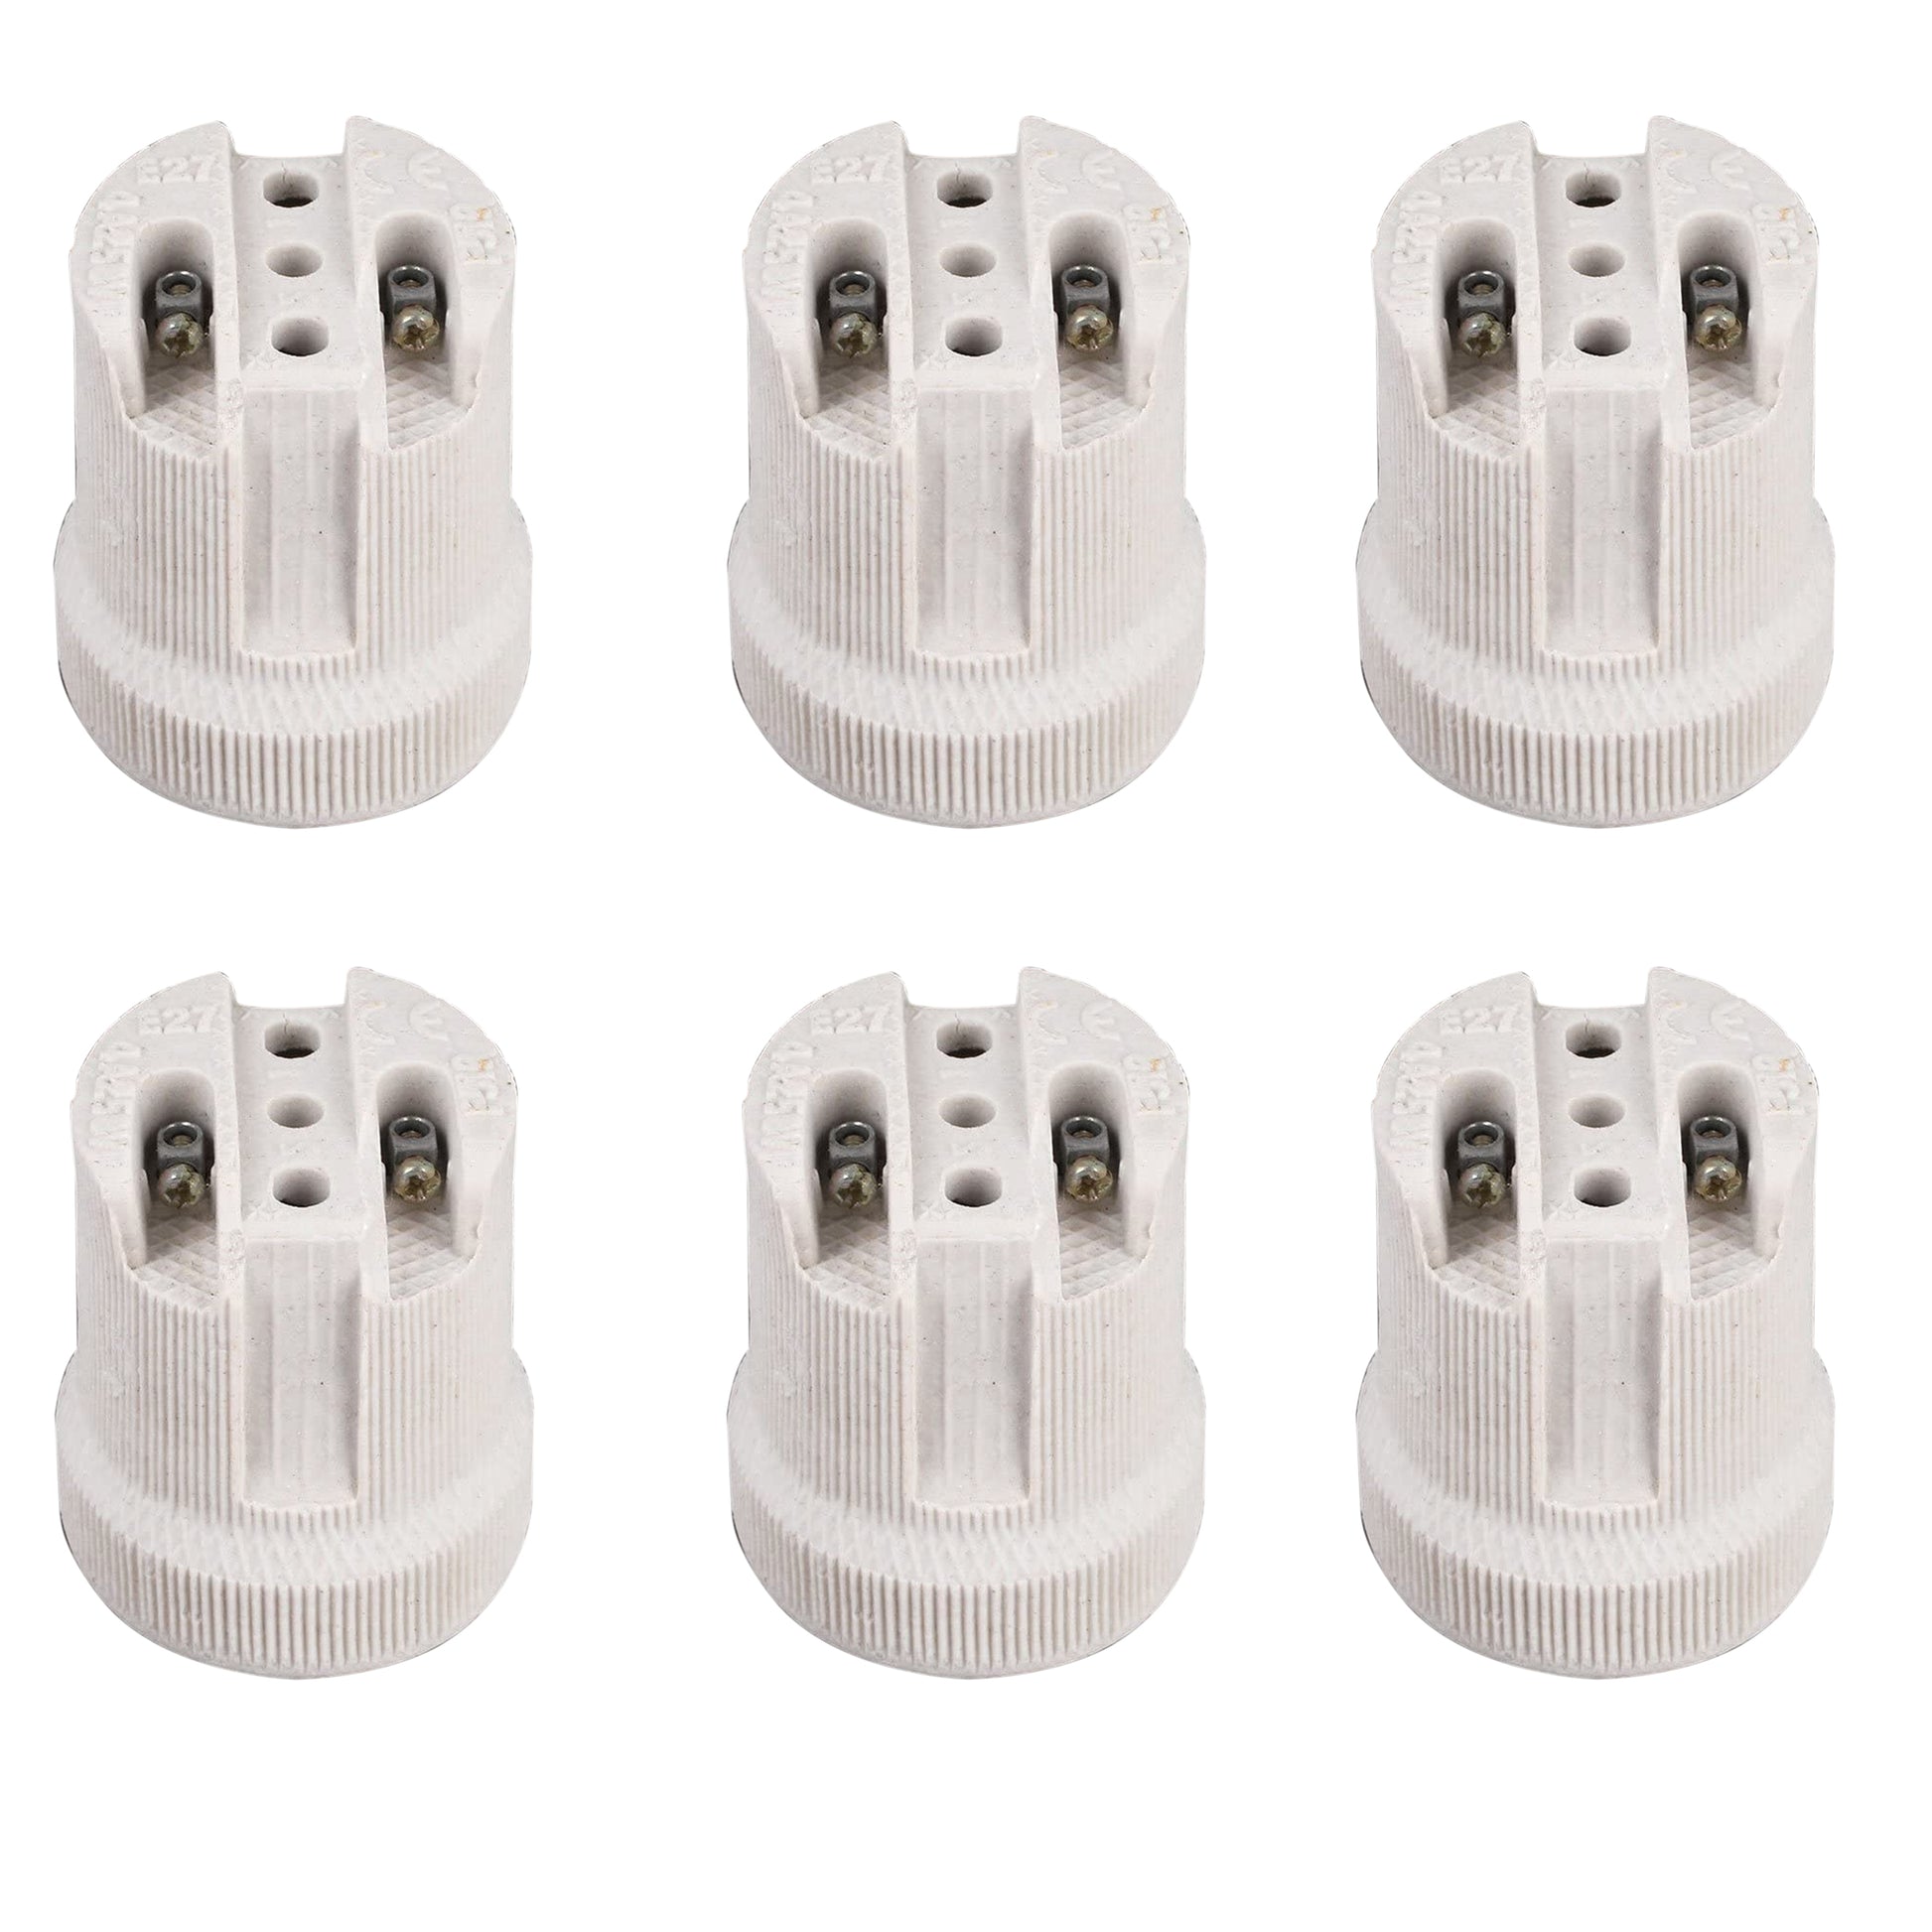 6 Pack E27 Bulb Holder Edison Screw White Ceramic Porcelain Lamp holder For Table Lamp E27 60W Plain Lamp holder Socket UK.